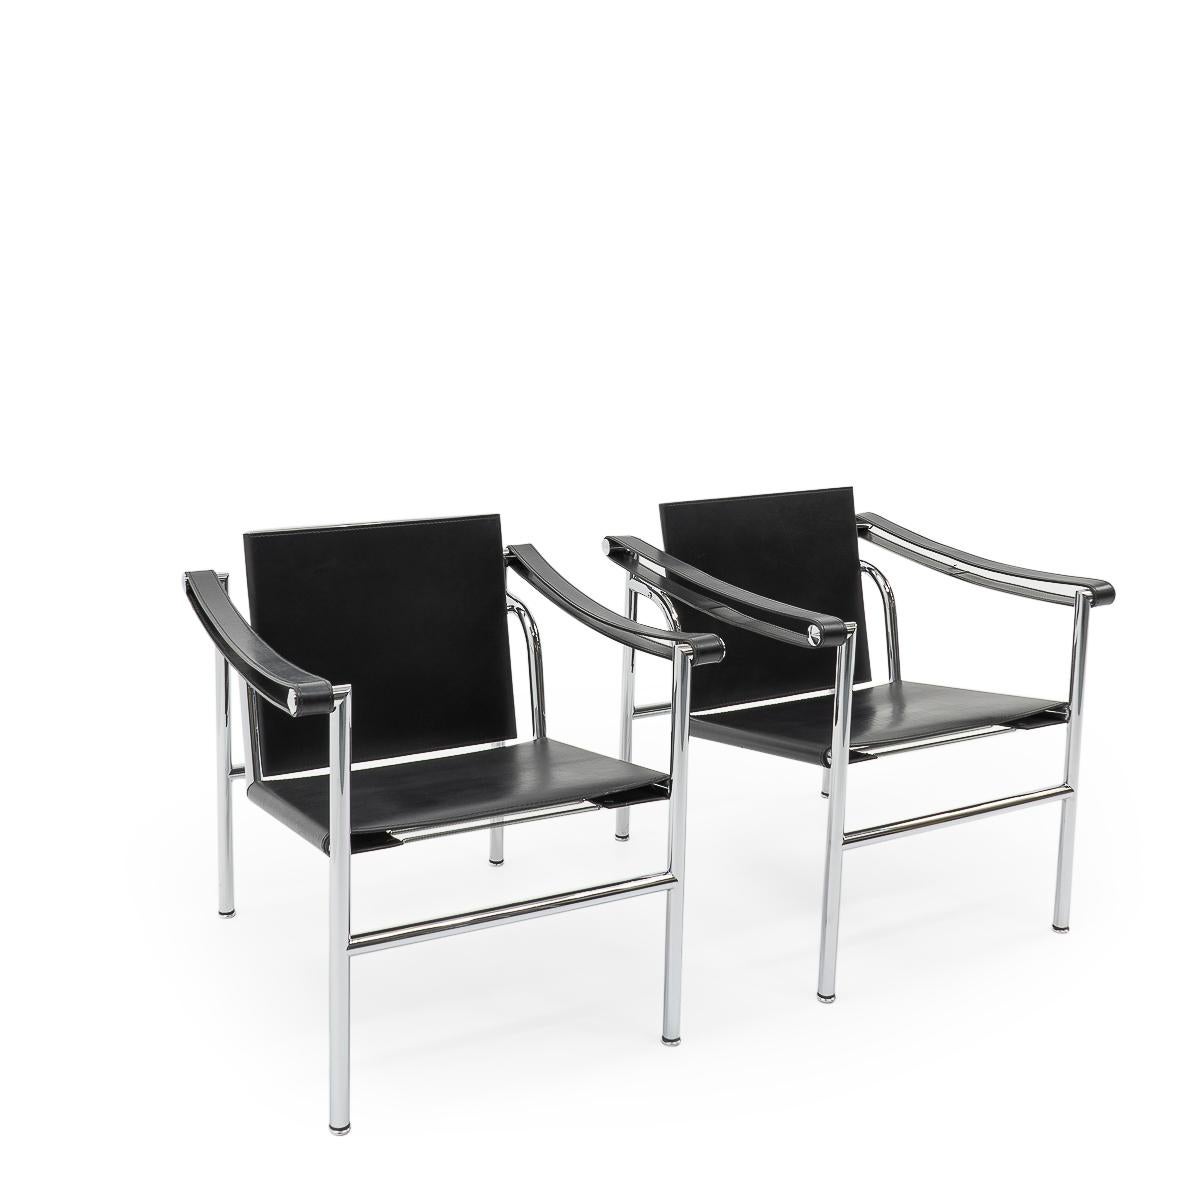 Paire de fauteuils LC1 assortis, conçus par Le Corbusier, Pierre Jeanneret et Charlotte Perriand à la fin des années 1920 et constitués de tubes de métal chromé et de cuir.

Notre ensemble date des années 1980, et reste en très bon état compte